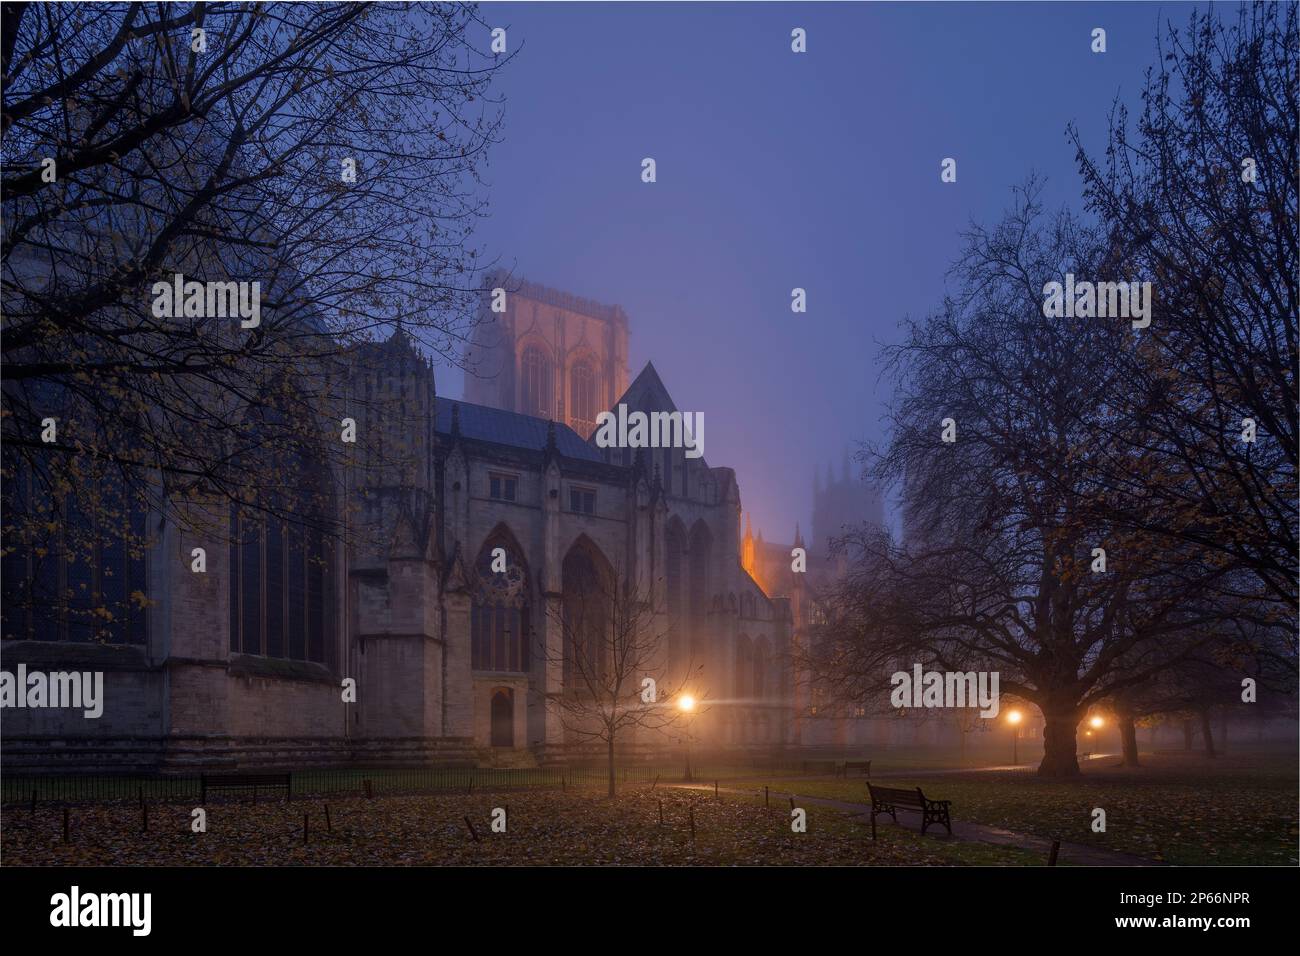 L'église et l'église Metropolitique de Saint-Pierre, à York Minster, ont été enveloppées de brouillard à l'aube à la fin d'une matinée d'automne, York, Yorkshire, Angleterre Banque D'Images